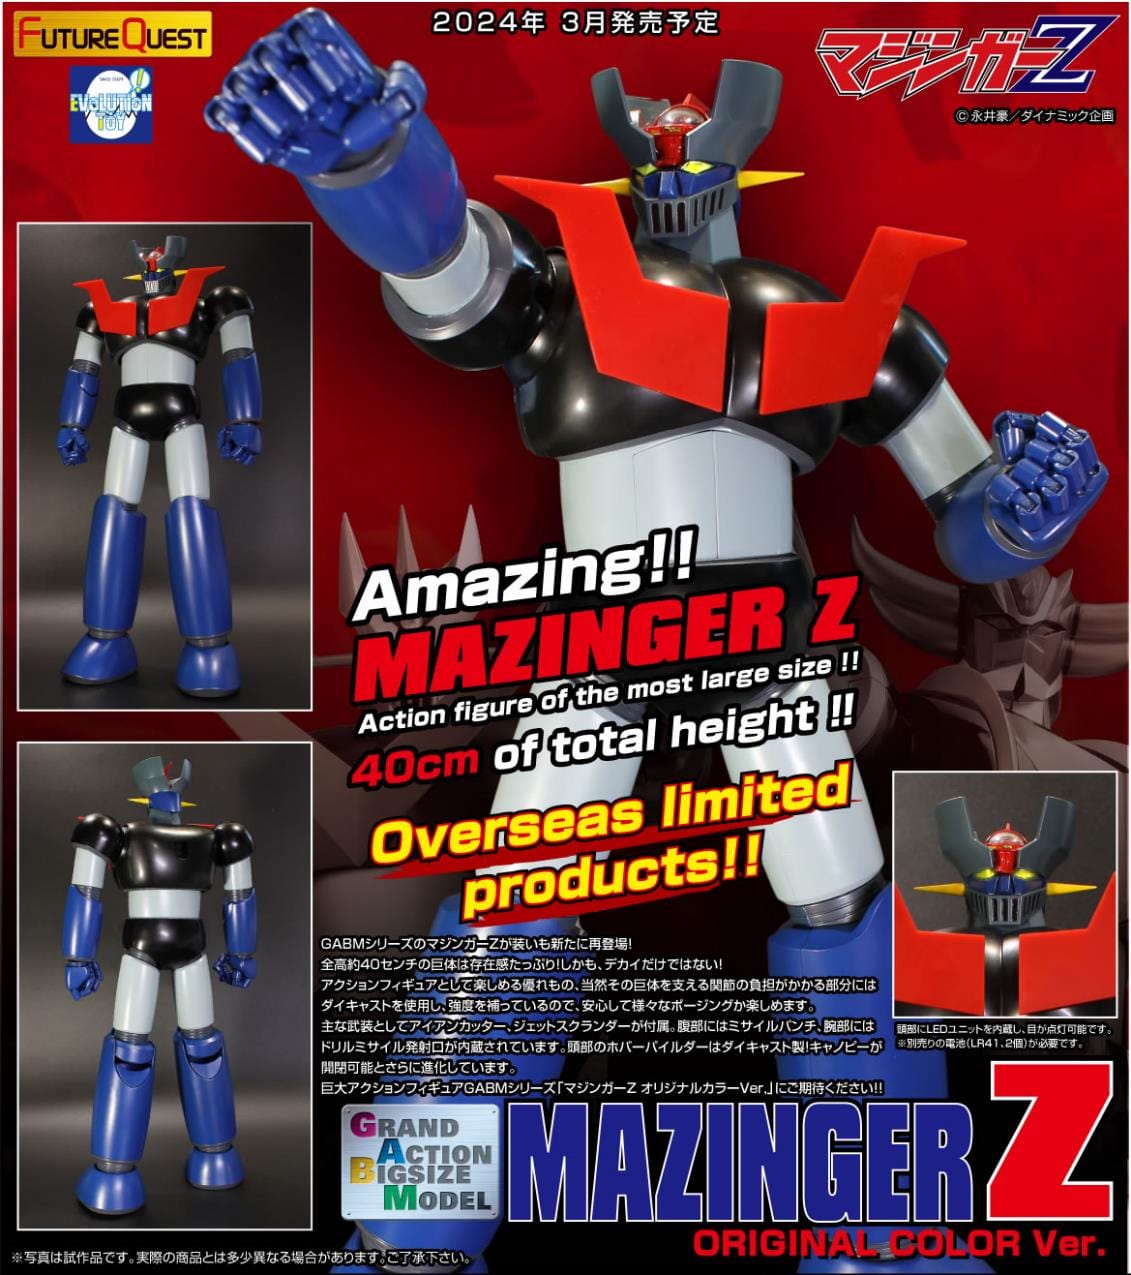 Evolution Toy GRAND ACTION BIGSIZE MODEL MAZINGER Z Original Color Ver